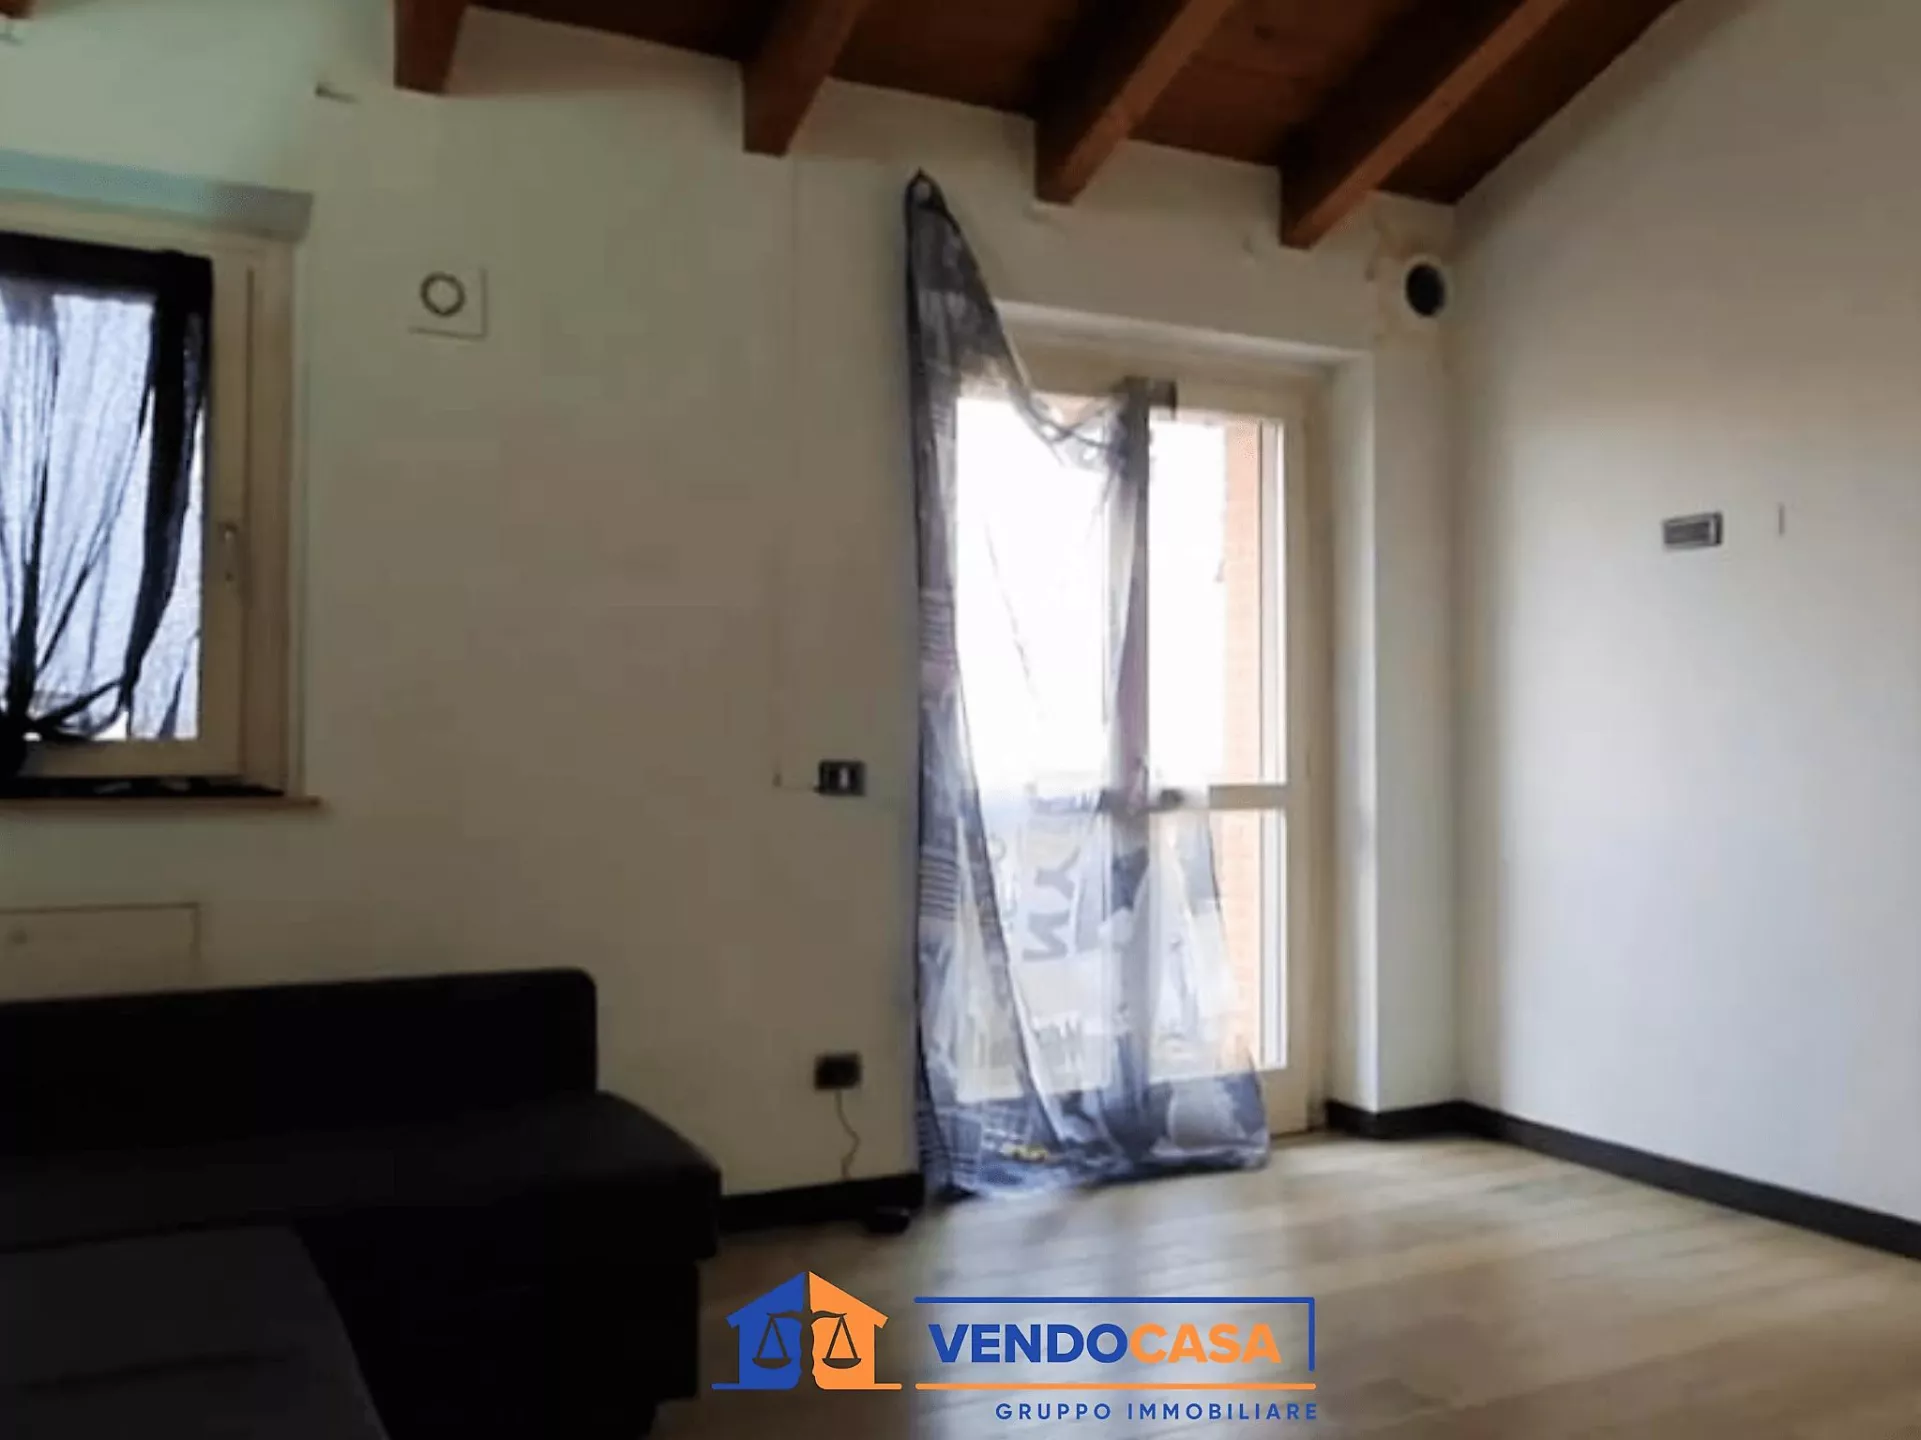 Immagine per Appartamento in vendita a Piacenza strada Della Regina 137